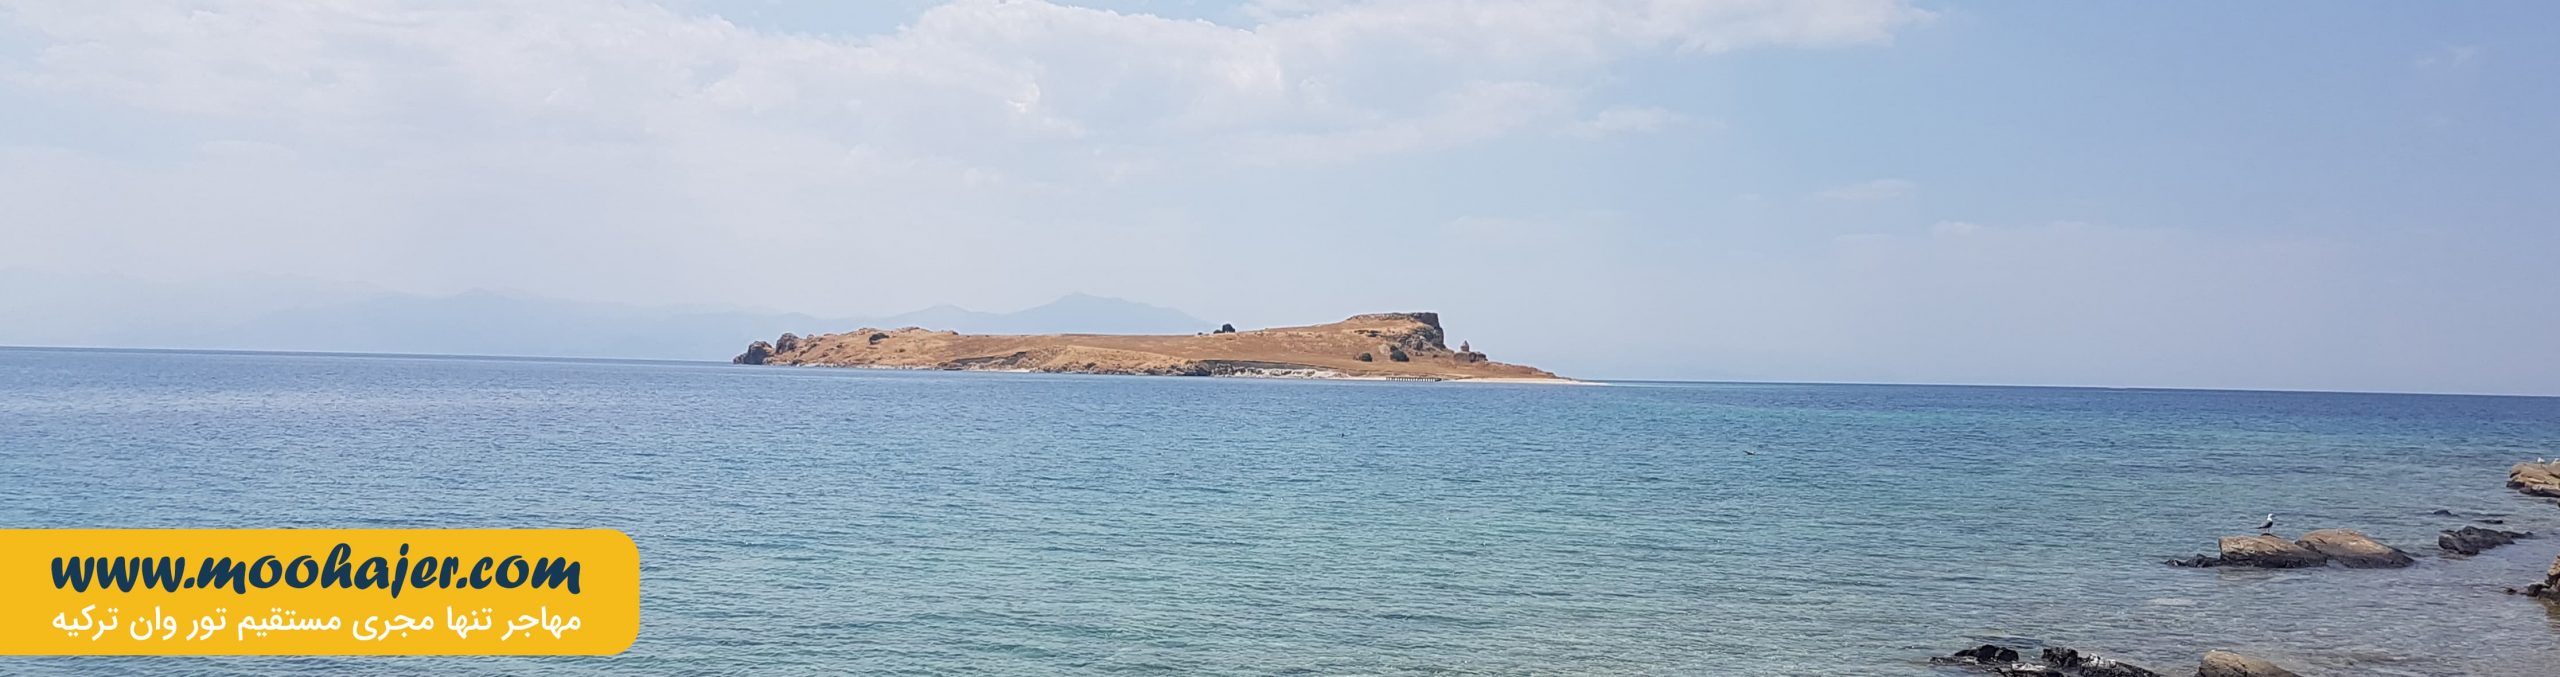 جزیره چارپاناک و صومعه کتوتس | جاذبه گردشگری شهر وان ترکیه | مهاجر سیر ایرانیان